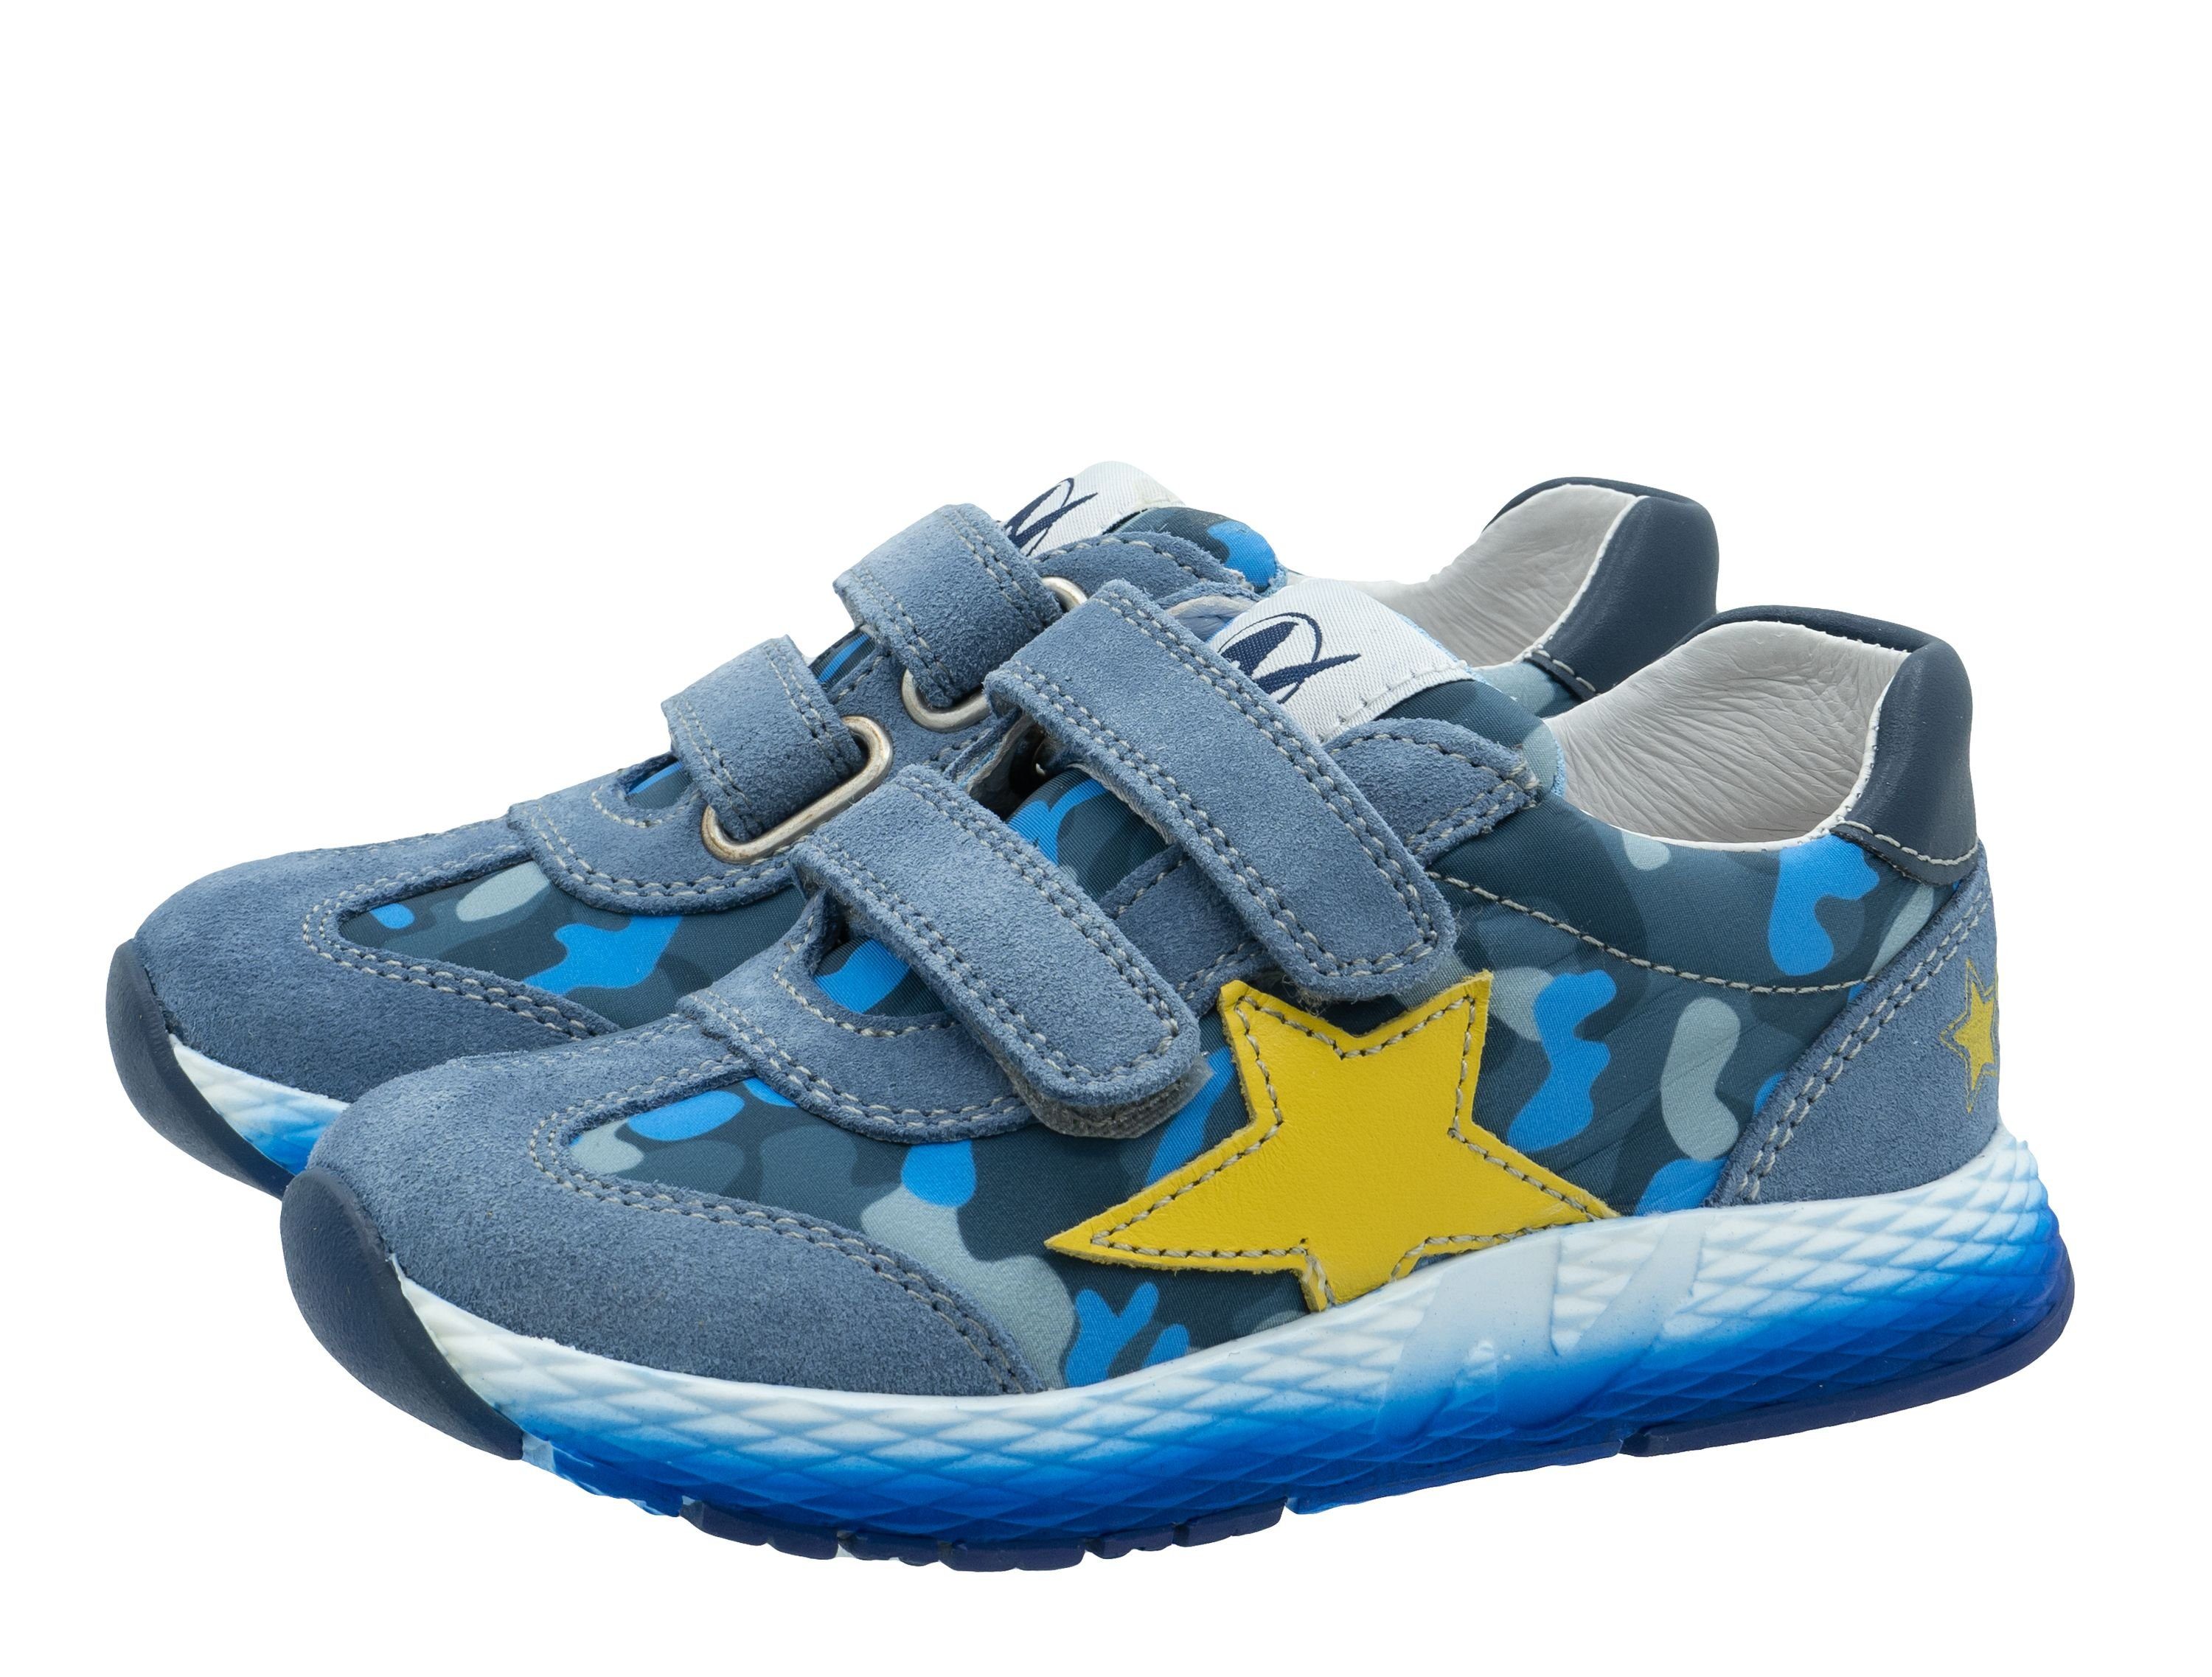 Naturino Naturino Sneaker Smug für Stern mit Blau Leder 1C54 Sneaker Kinder